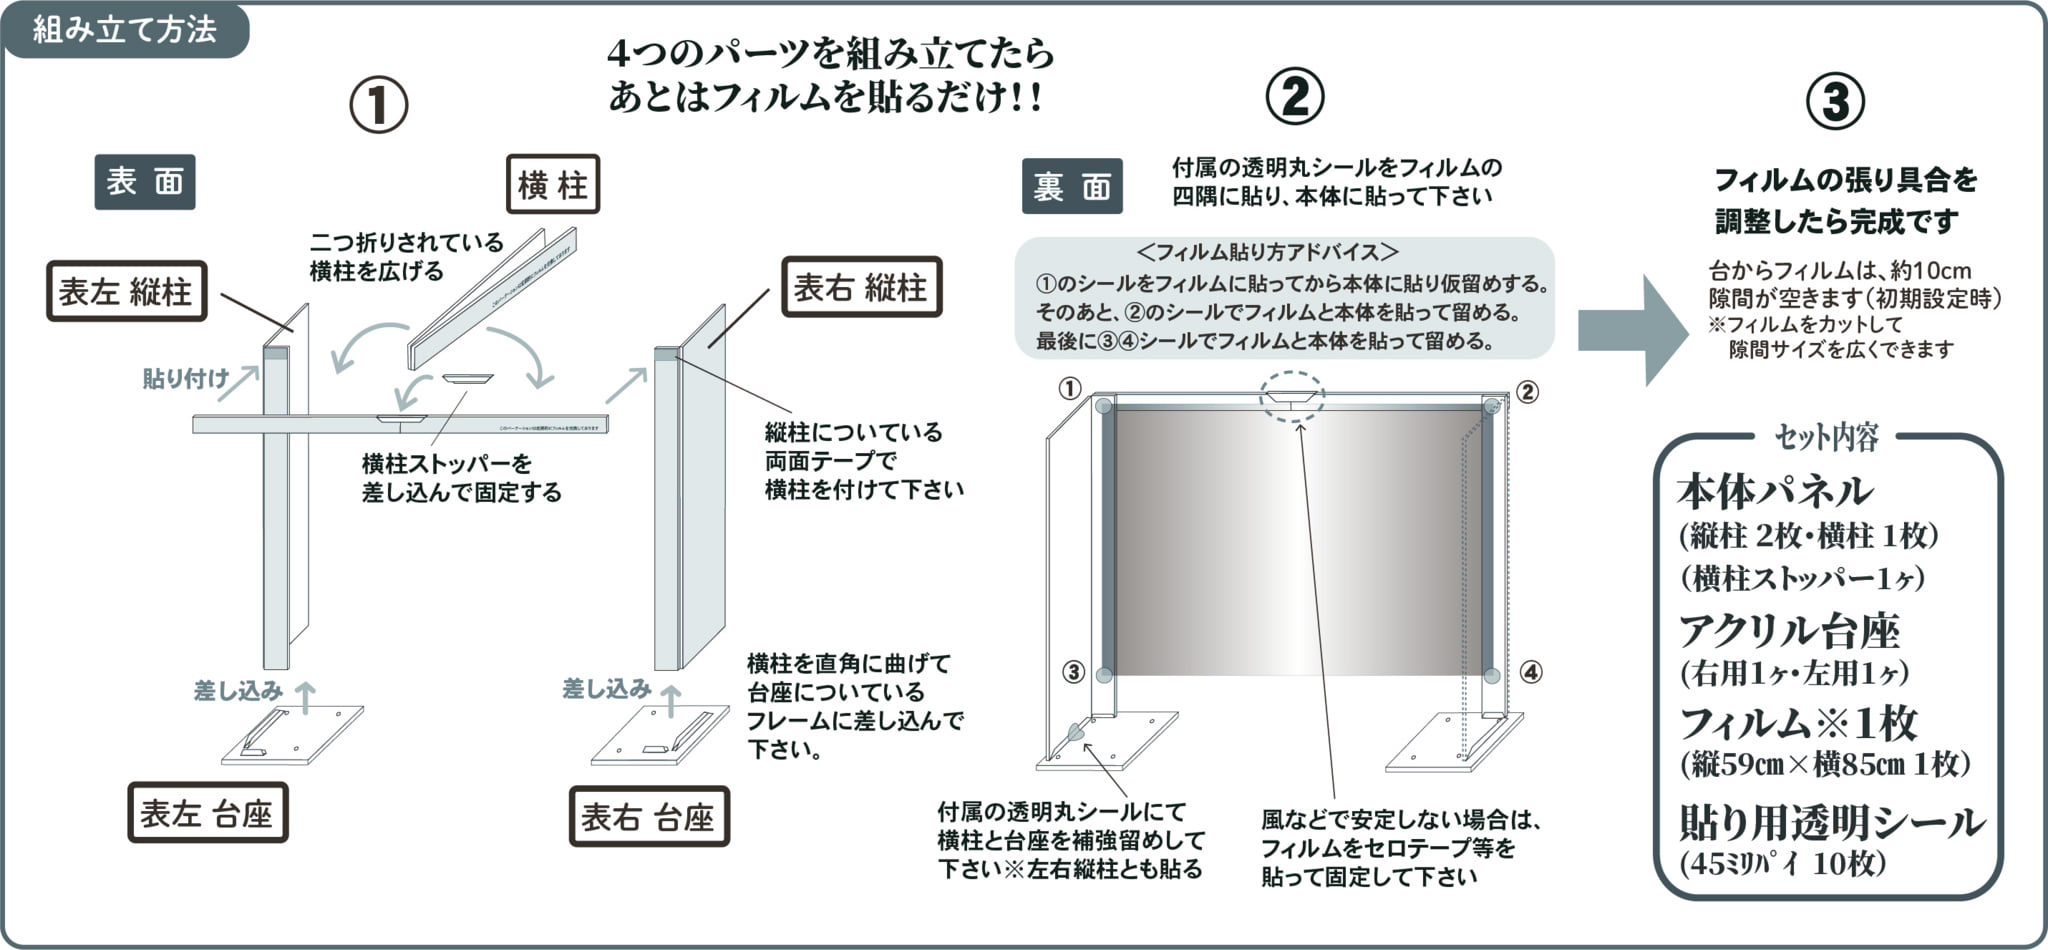 透明仕切りパーテーション 東京でフェイスガードシートなら 進和化工へ